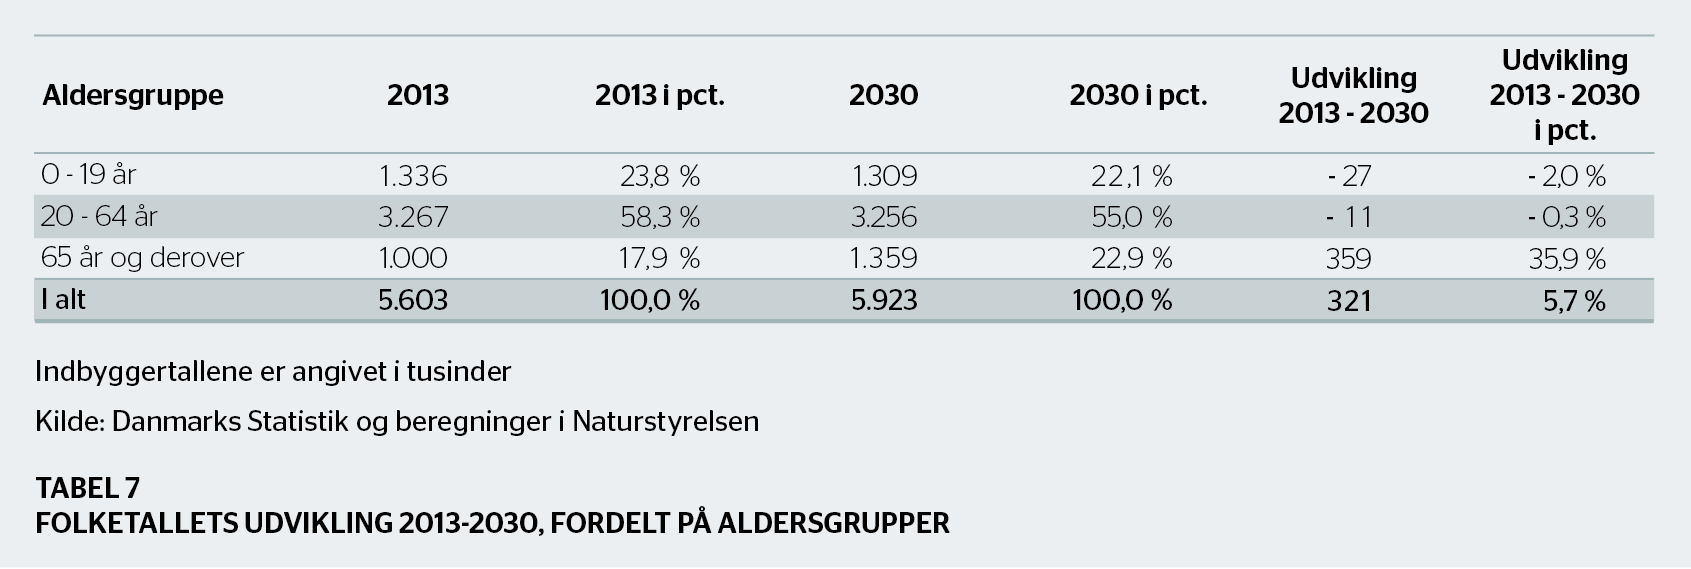 Der er dog den forskel mellem Østjylland og Sjælland, at den kraftige vækst ved Aarhus forudses at foregå spredt i hele området mellem Horsens, Randers og Skanderborg, mens væksten på Sjælland er